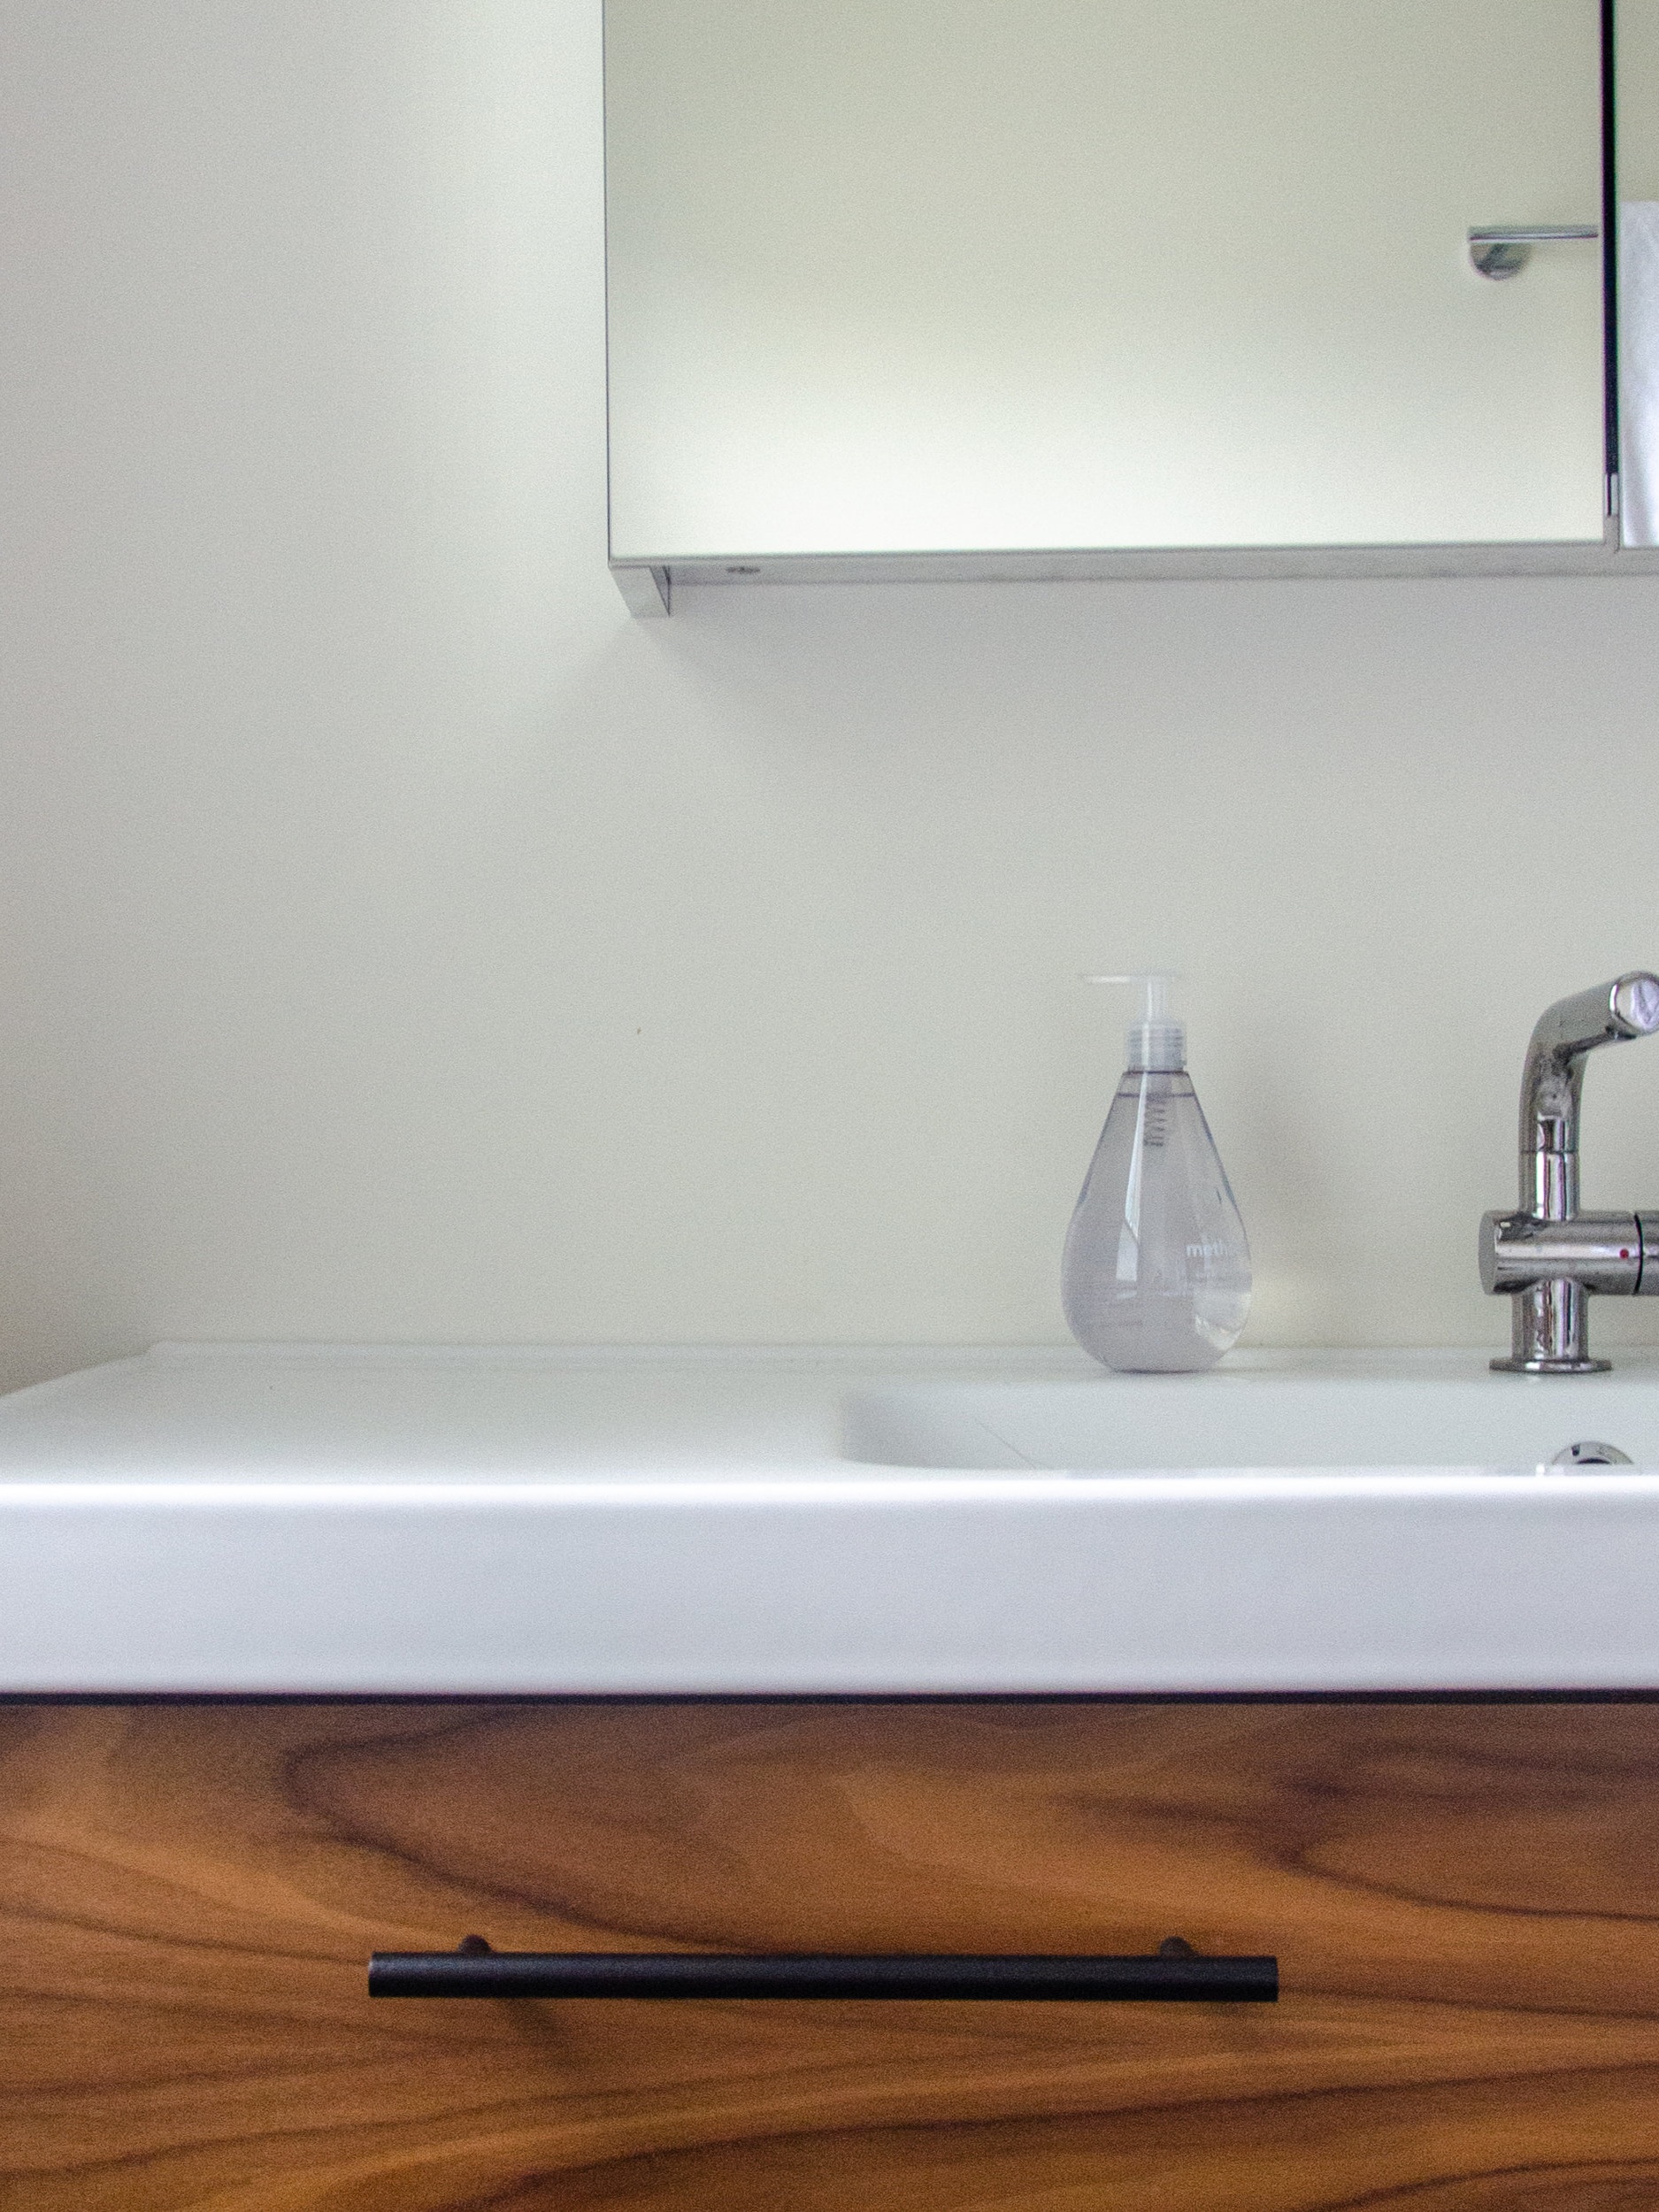 Ikea Morgon Bathroom Vanity And, Small Double Sink Vanity Ikea